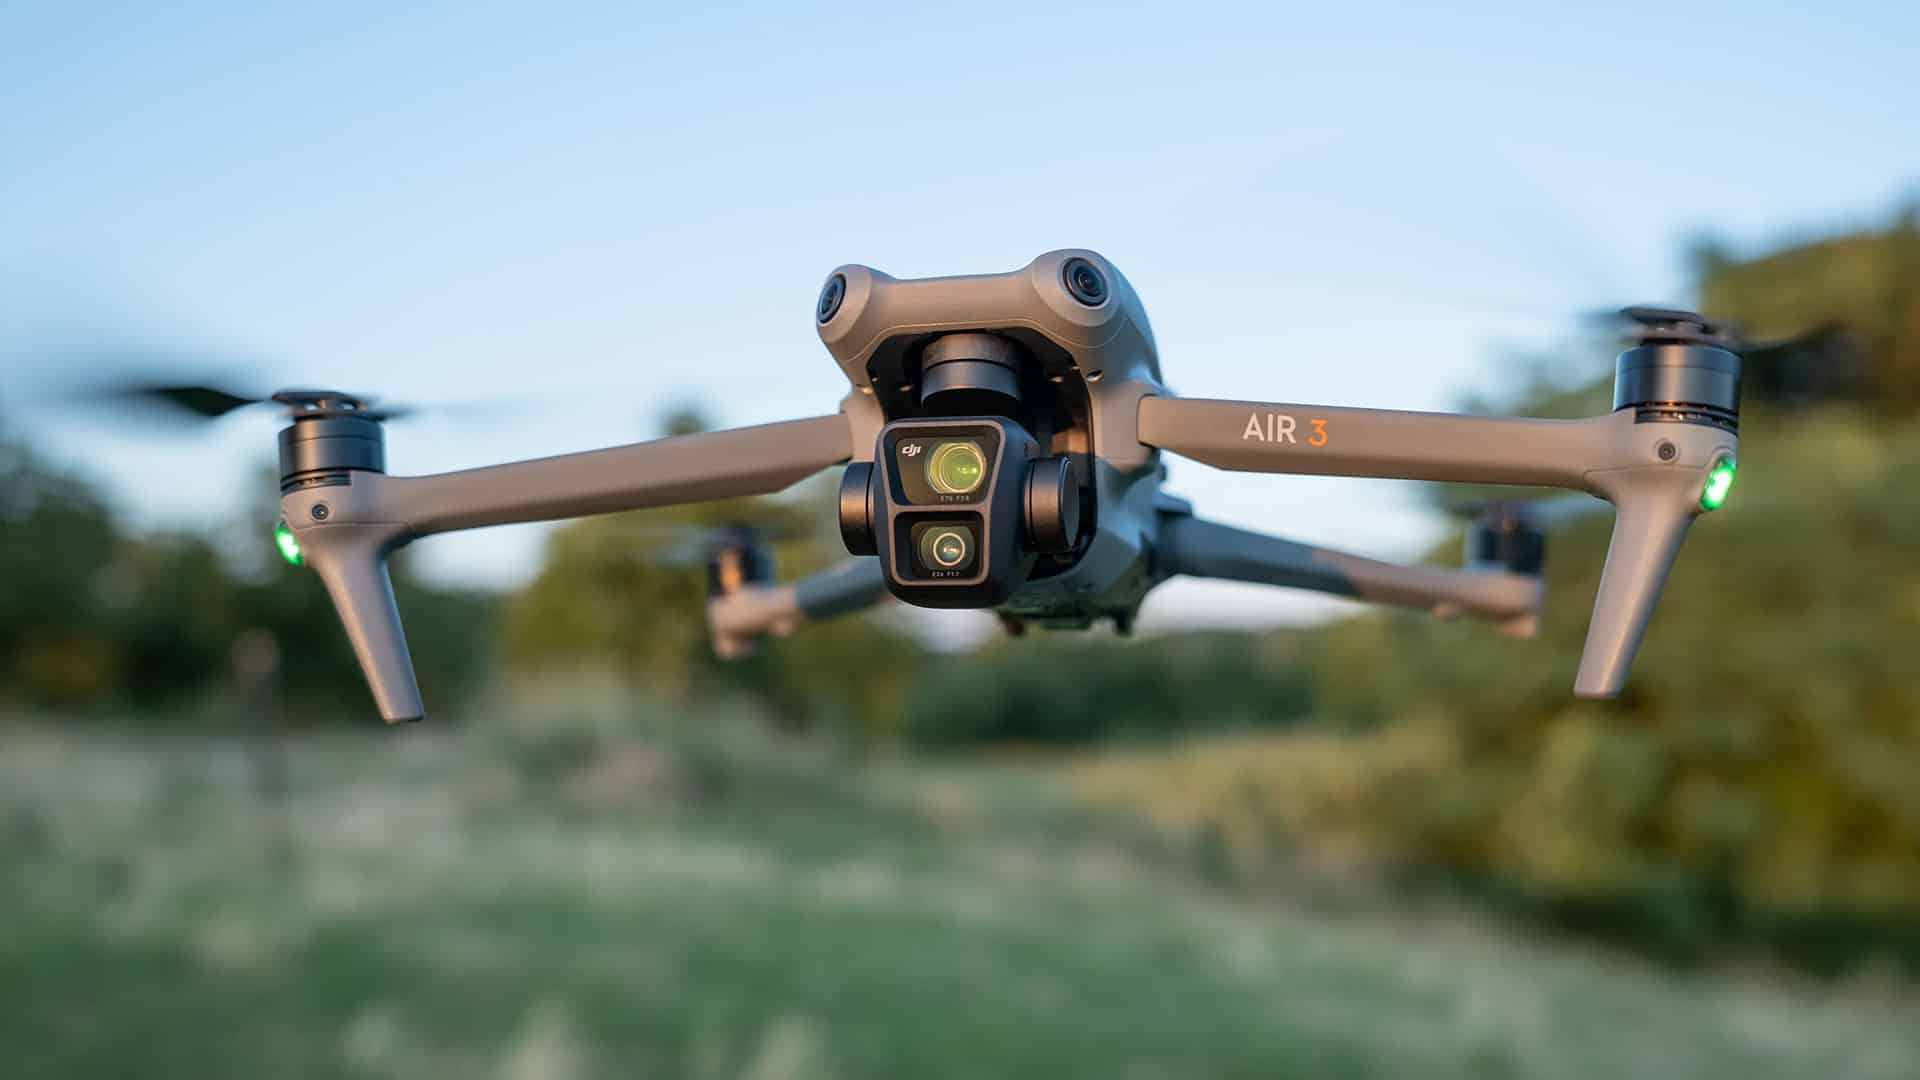 DJI Air 3 được xem là chiếc drone tốt nhất khi đánh giá về chất lượng và giá bán.